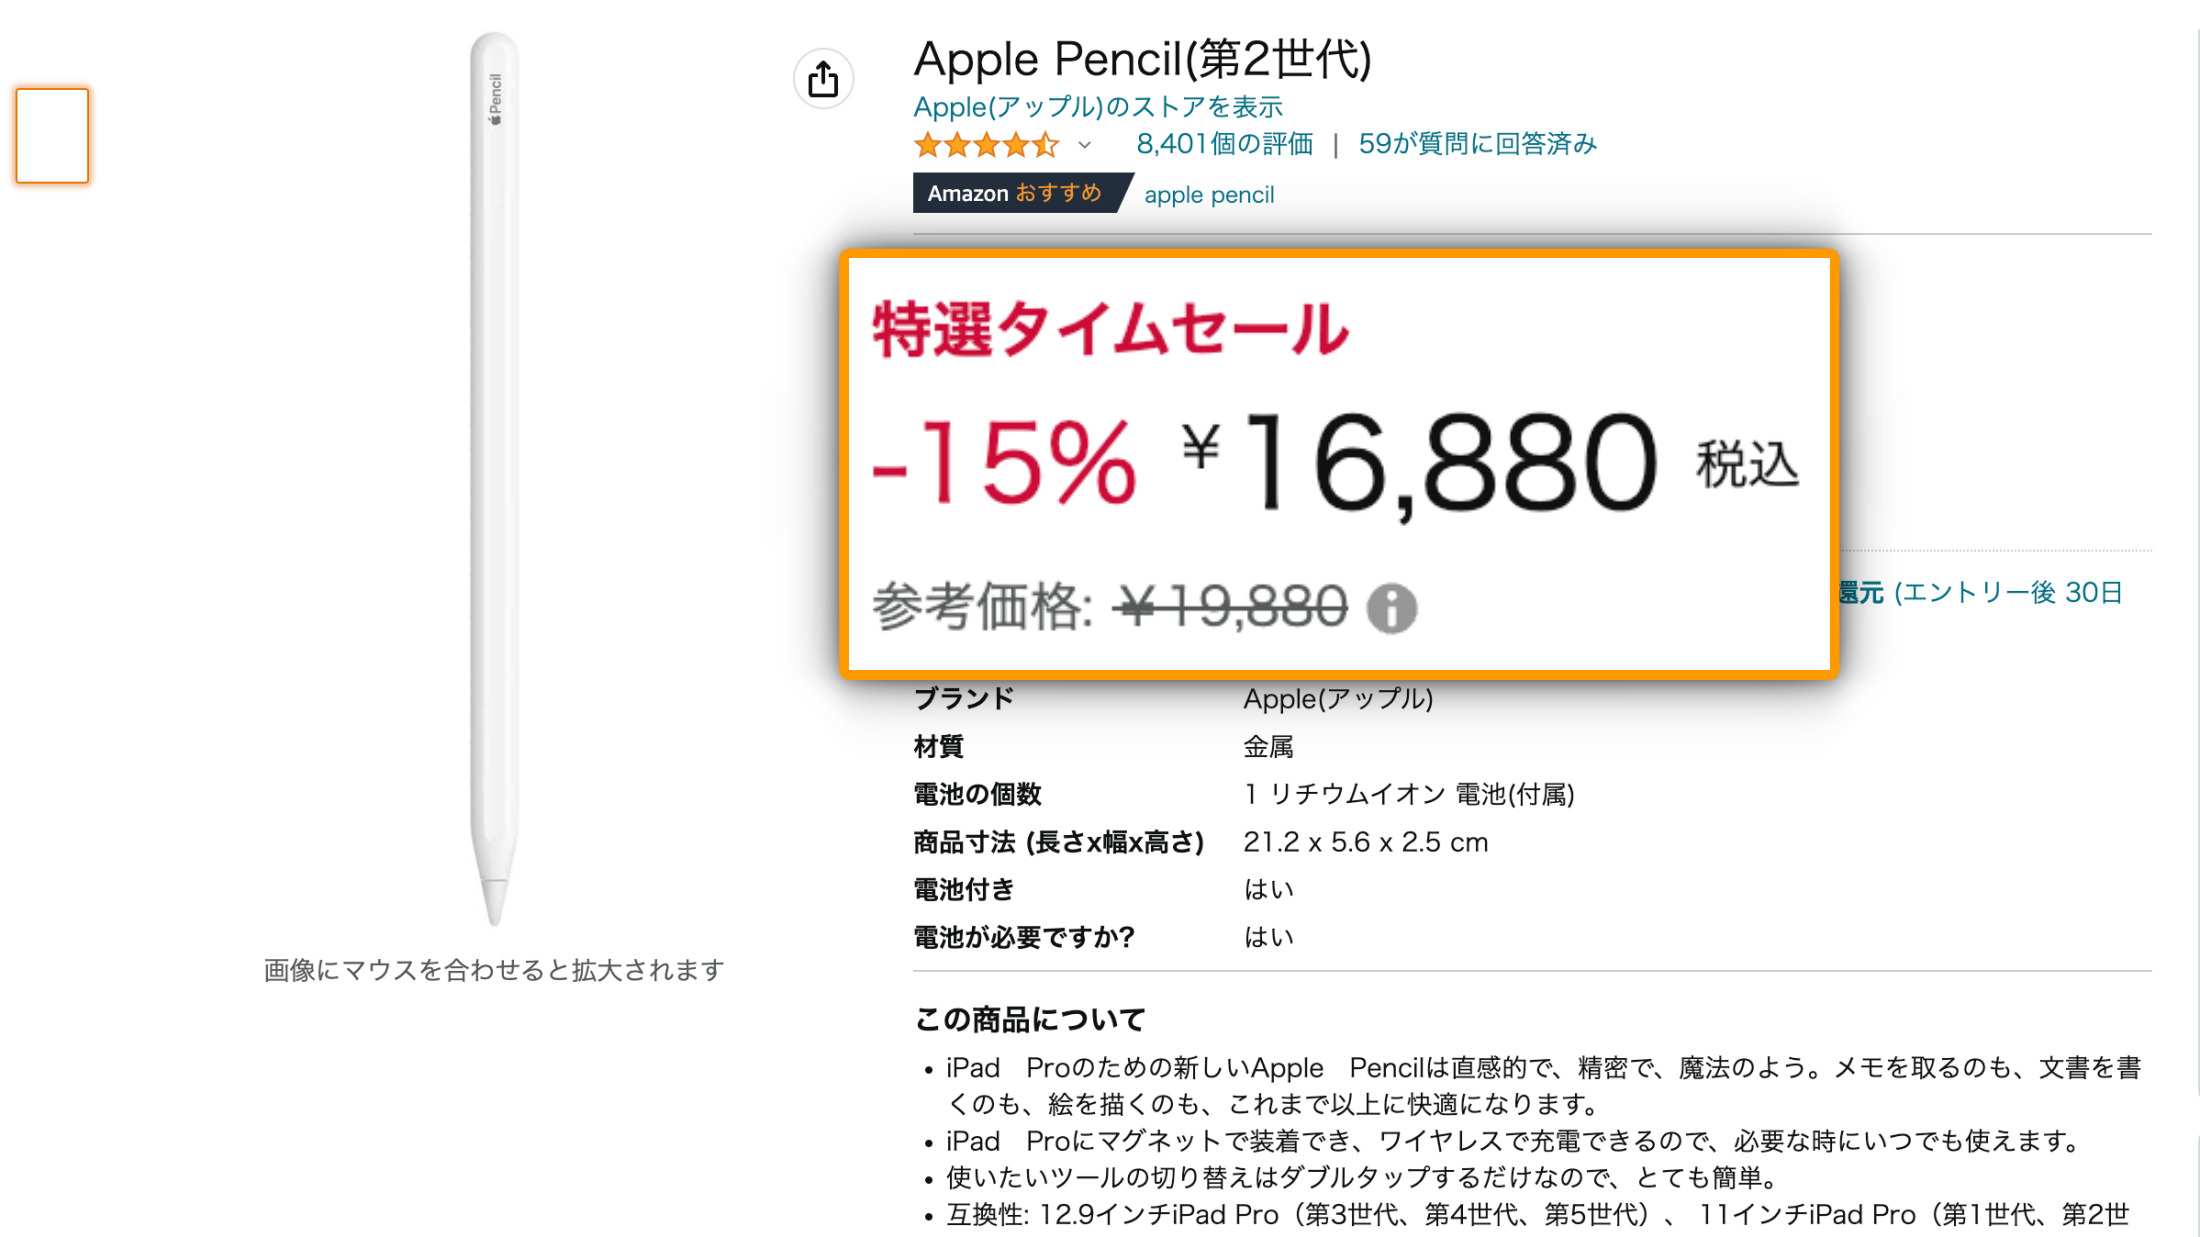 Amazon Apple Pencil2 Price